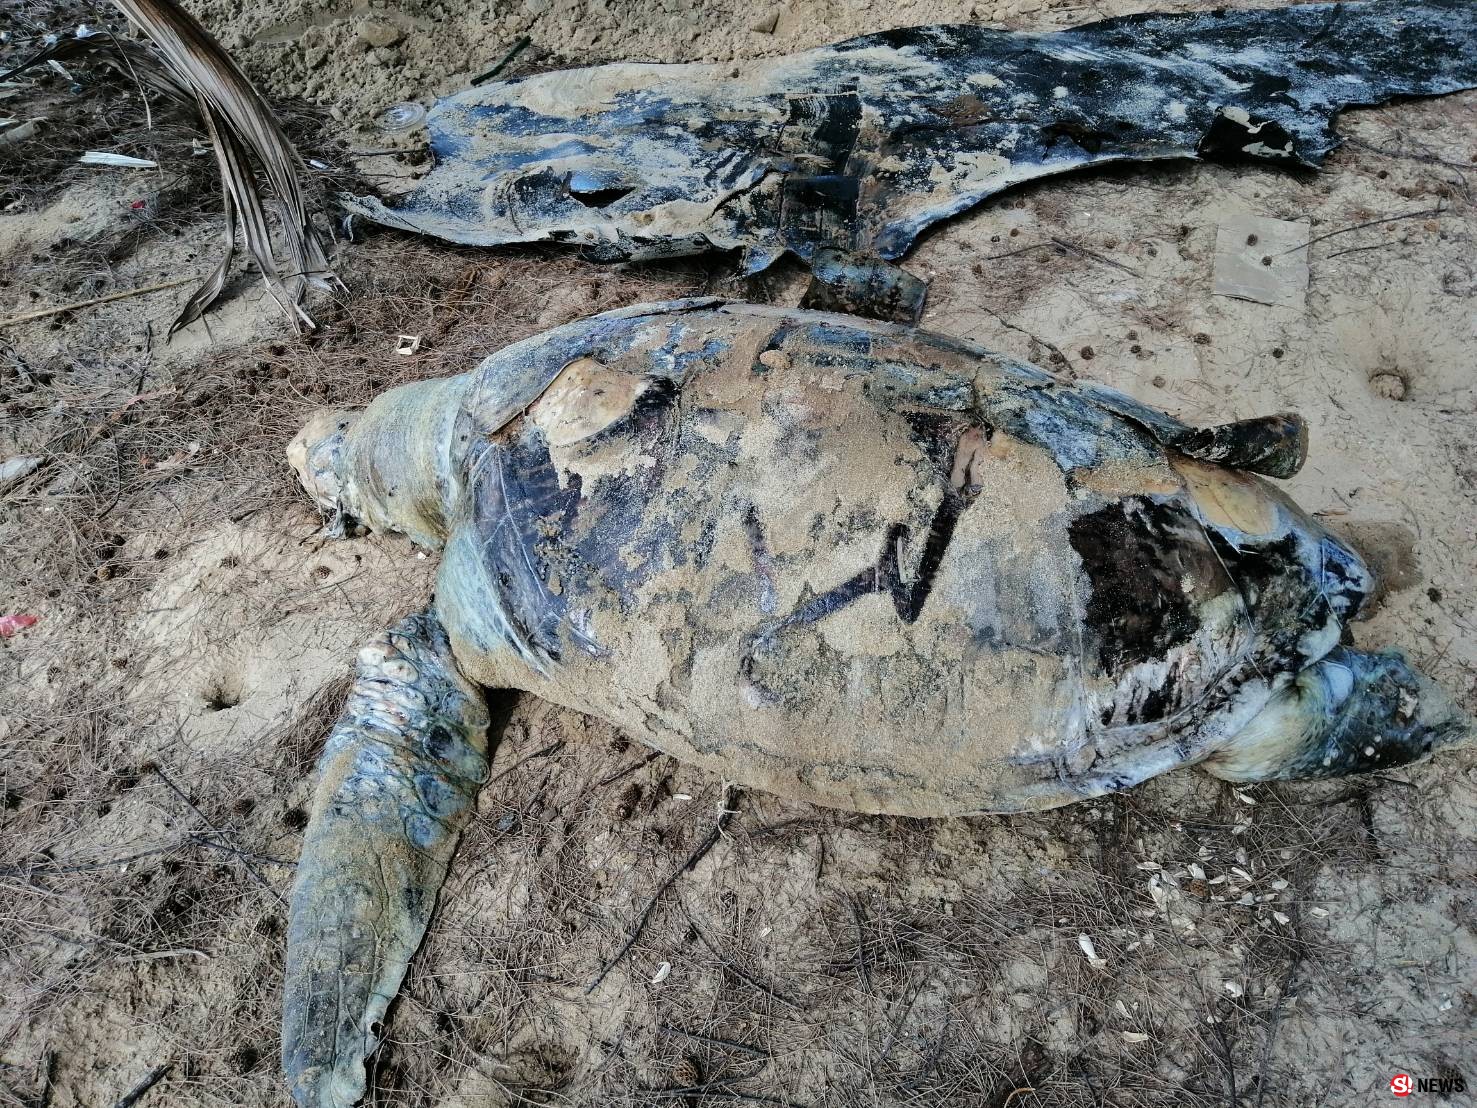 พบซากเต่าตนุตายเกยชายหาดแม่รำพึง จ.ระยอง เบื้องต้นผ่าพิสูจน์พบเชือกไนลอนอวนจับปลาในกระเพาะอาหาร คาดเป็นสาเหตุการตาย